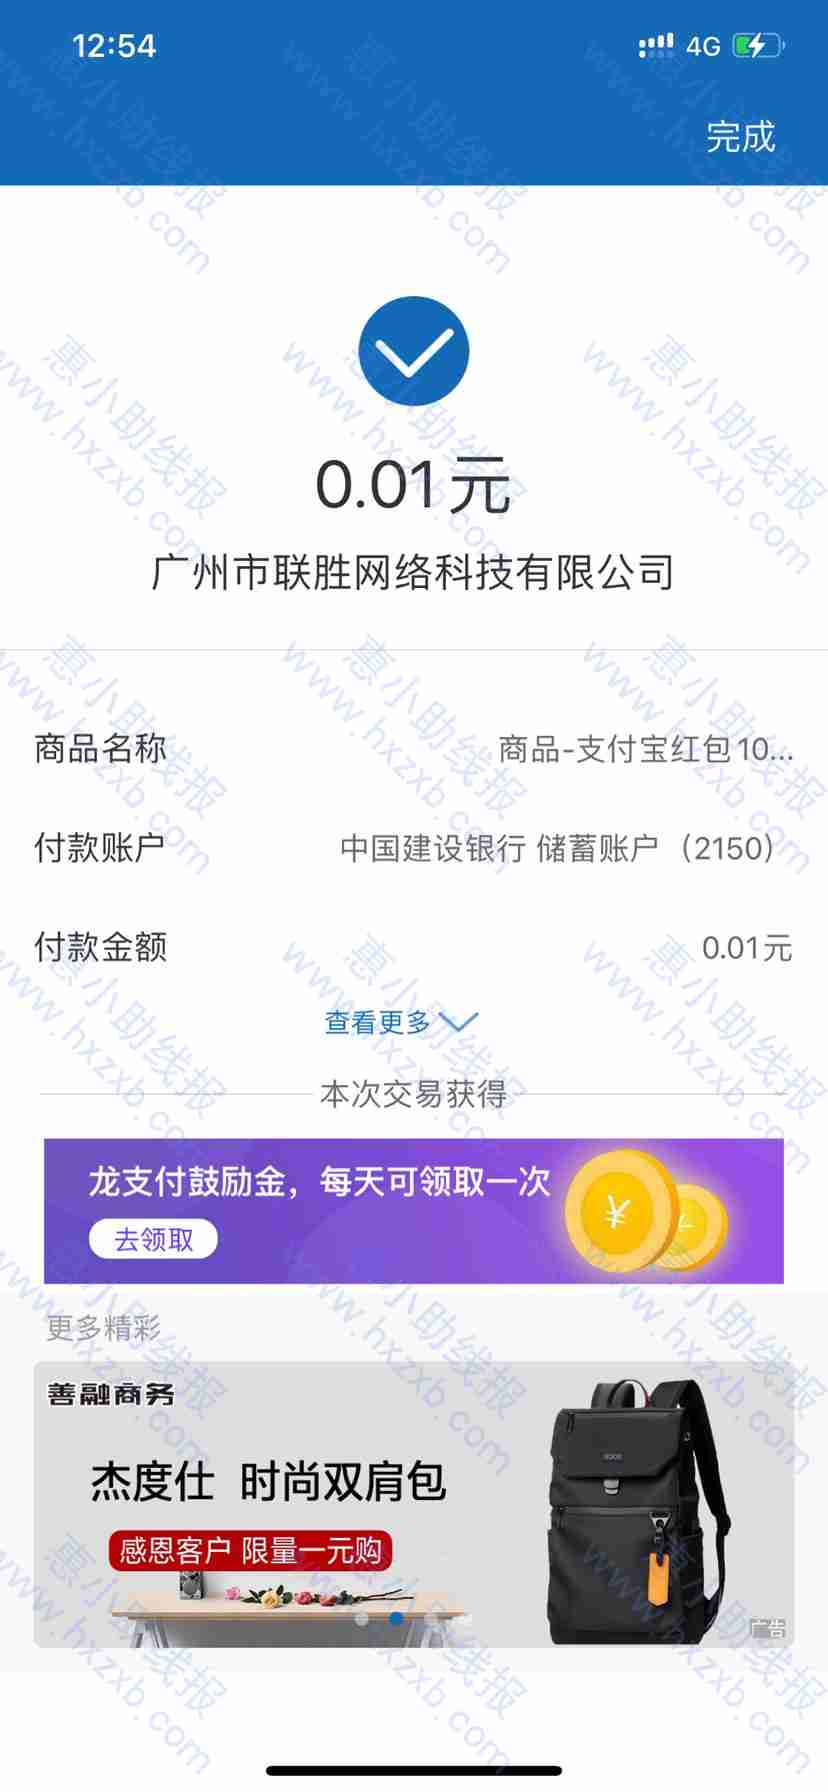 中国建行APP 0.04撸40元